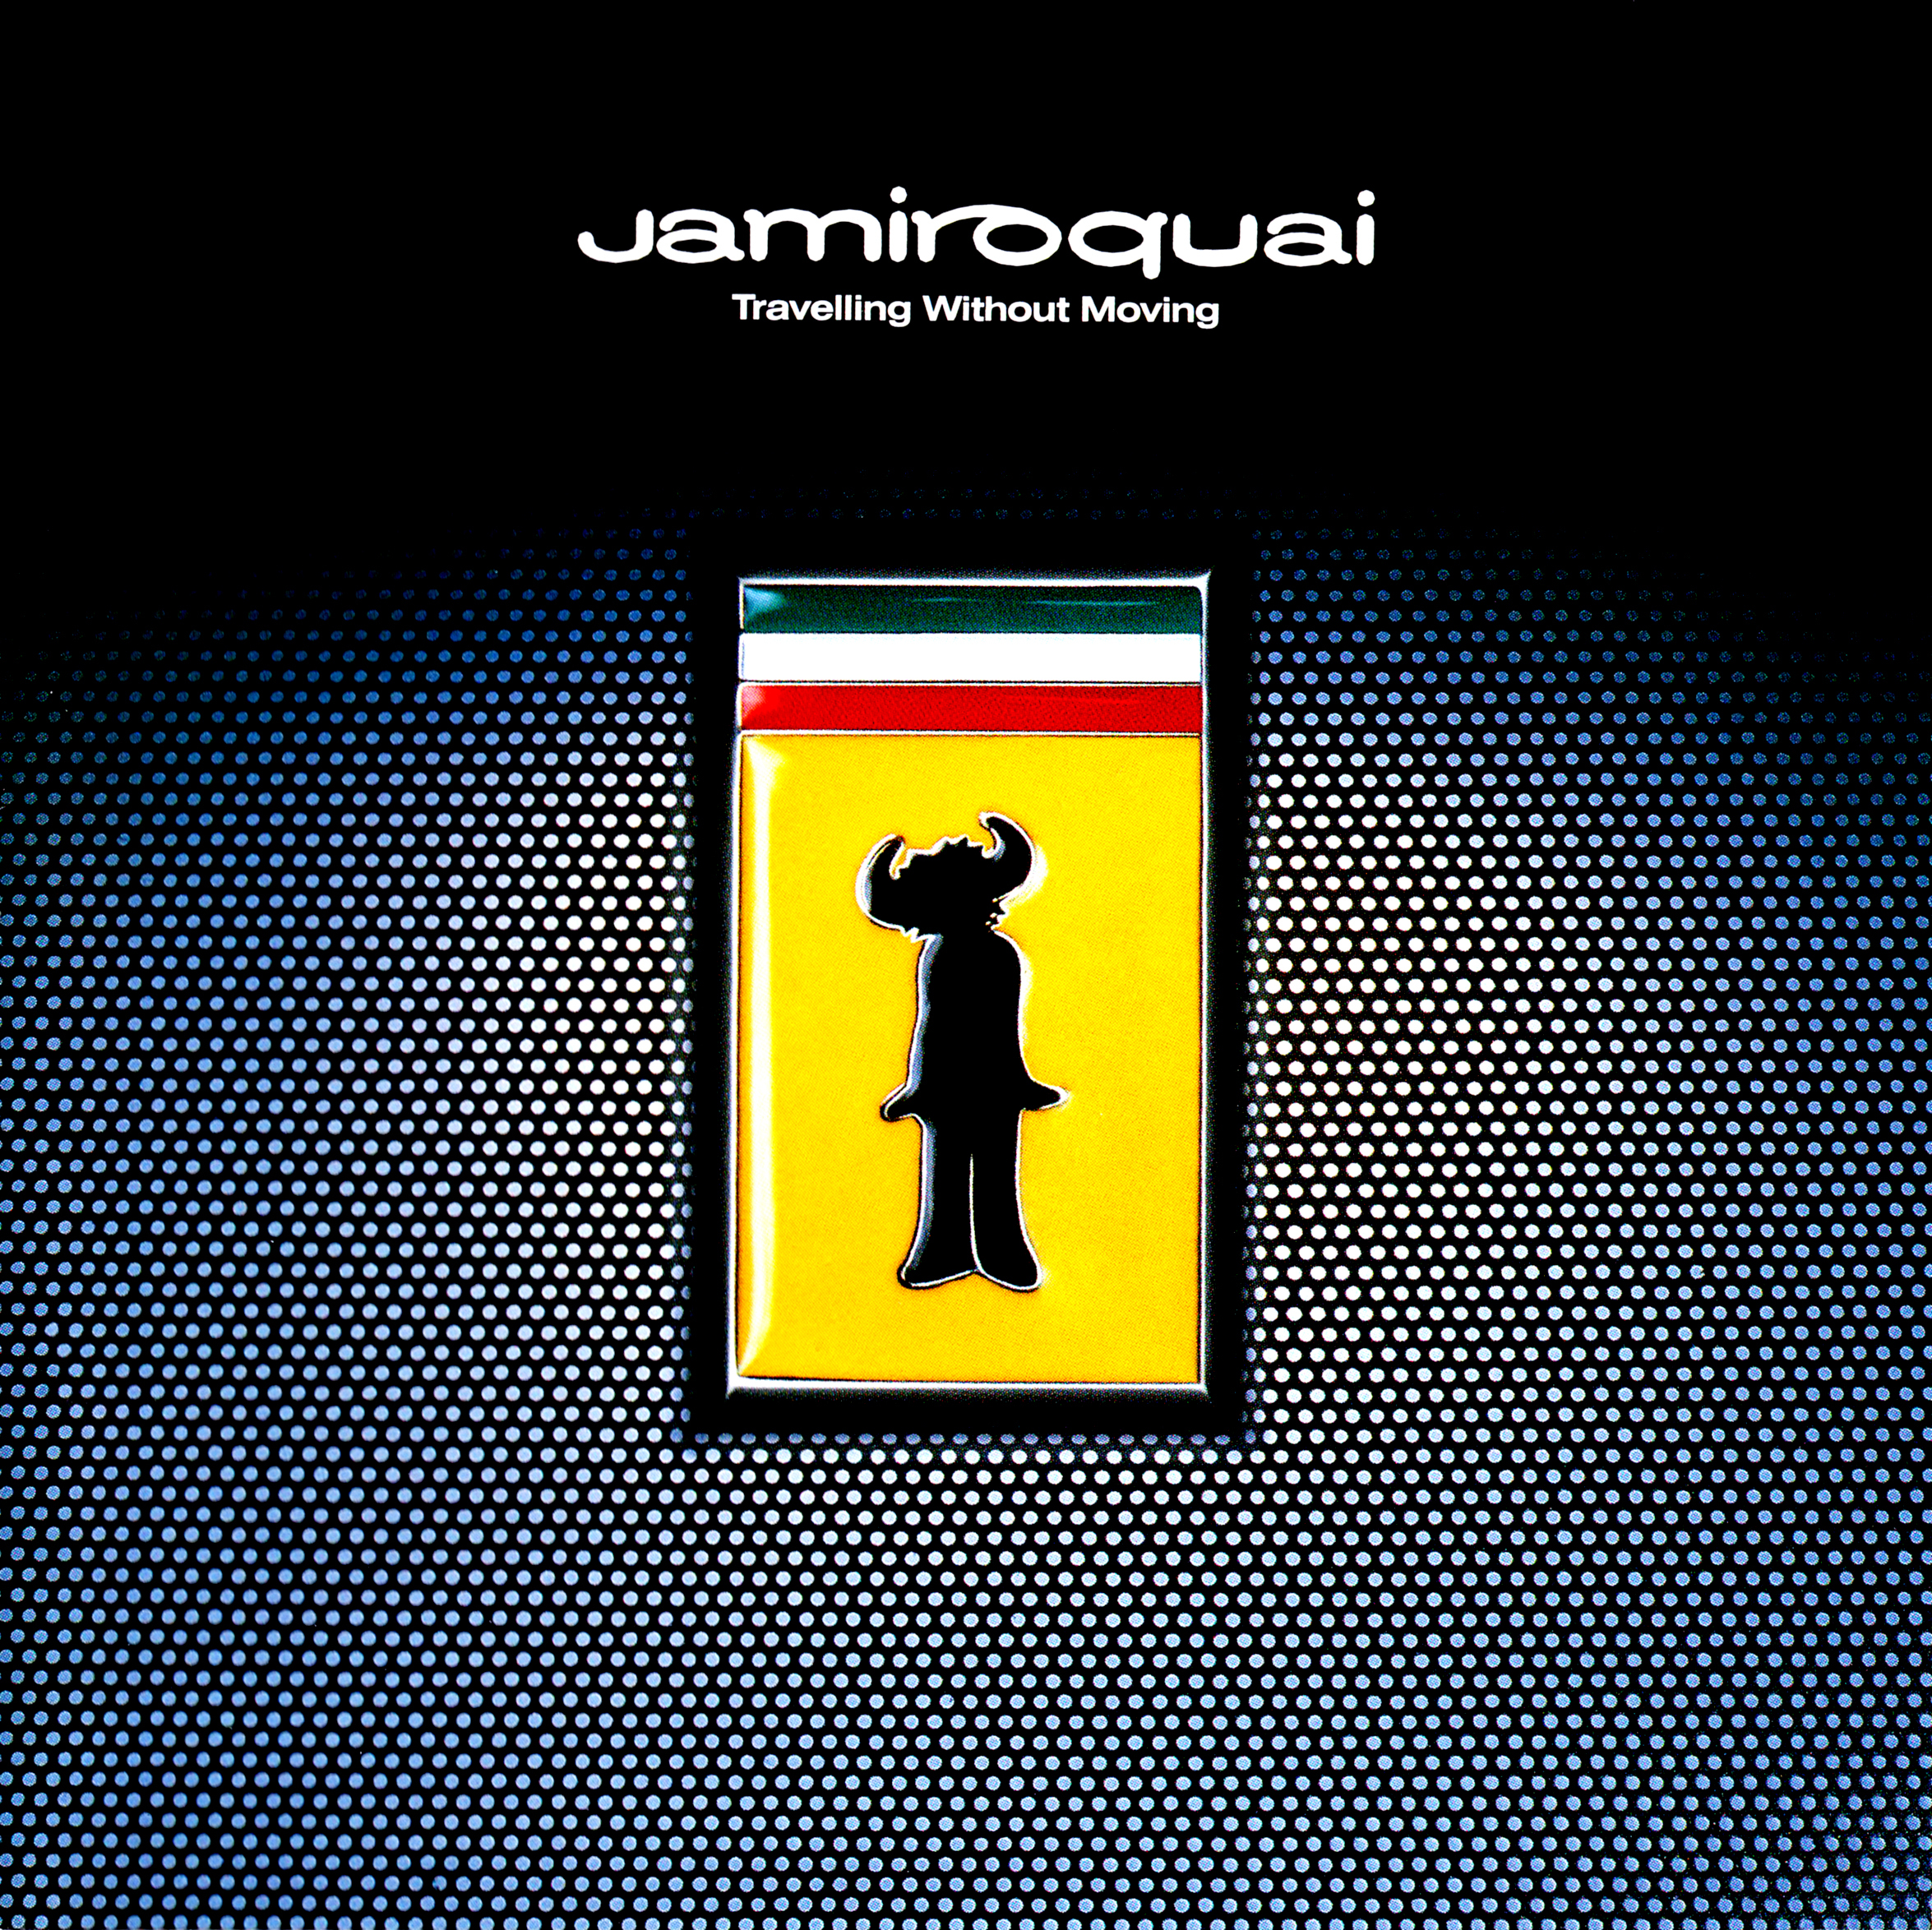 Jamiroquai (ジャミロクワイ) 3rdアルバム『Travelling Without Moving〜ジャミロクワイと旅に出よう』(1996年発売) 高画質CDジャケット画像